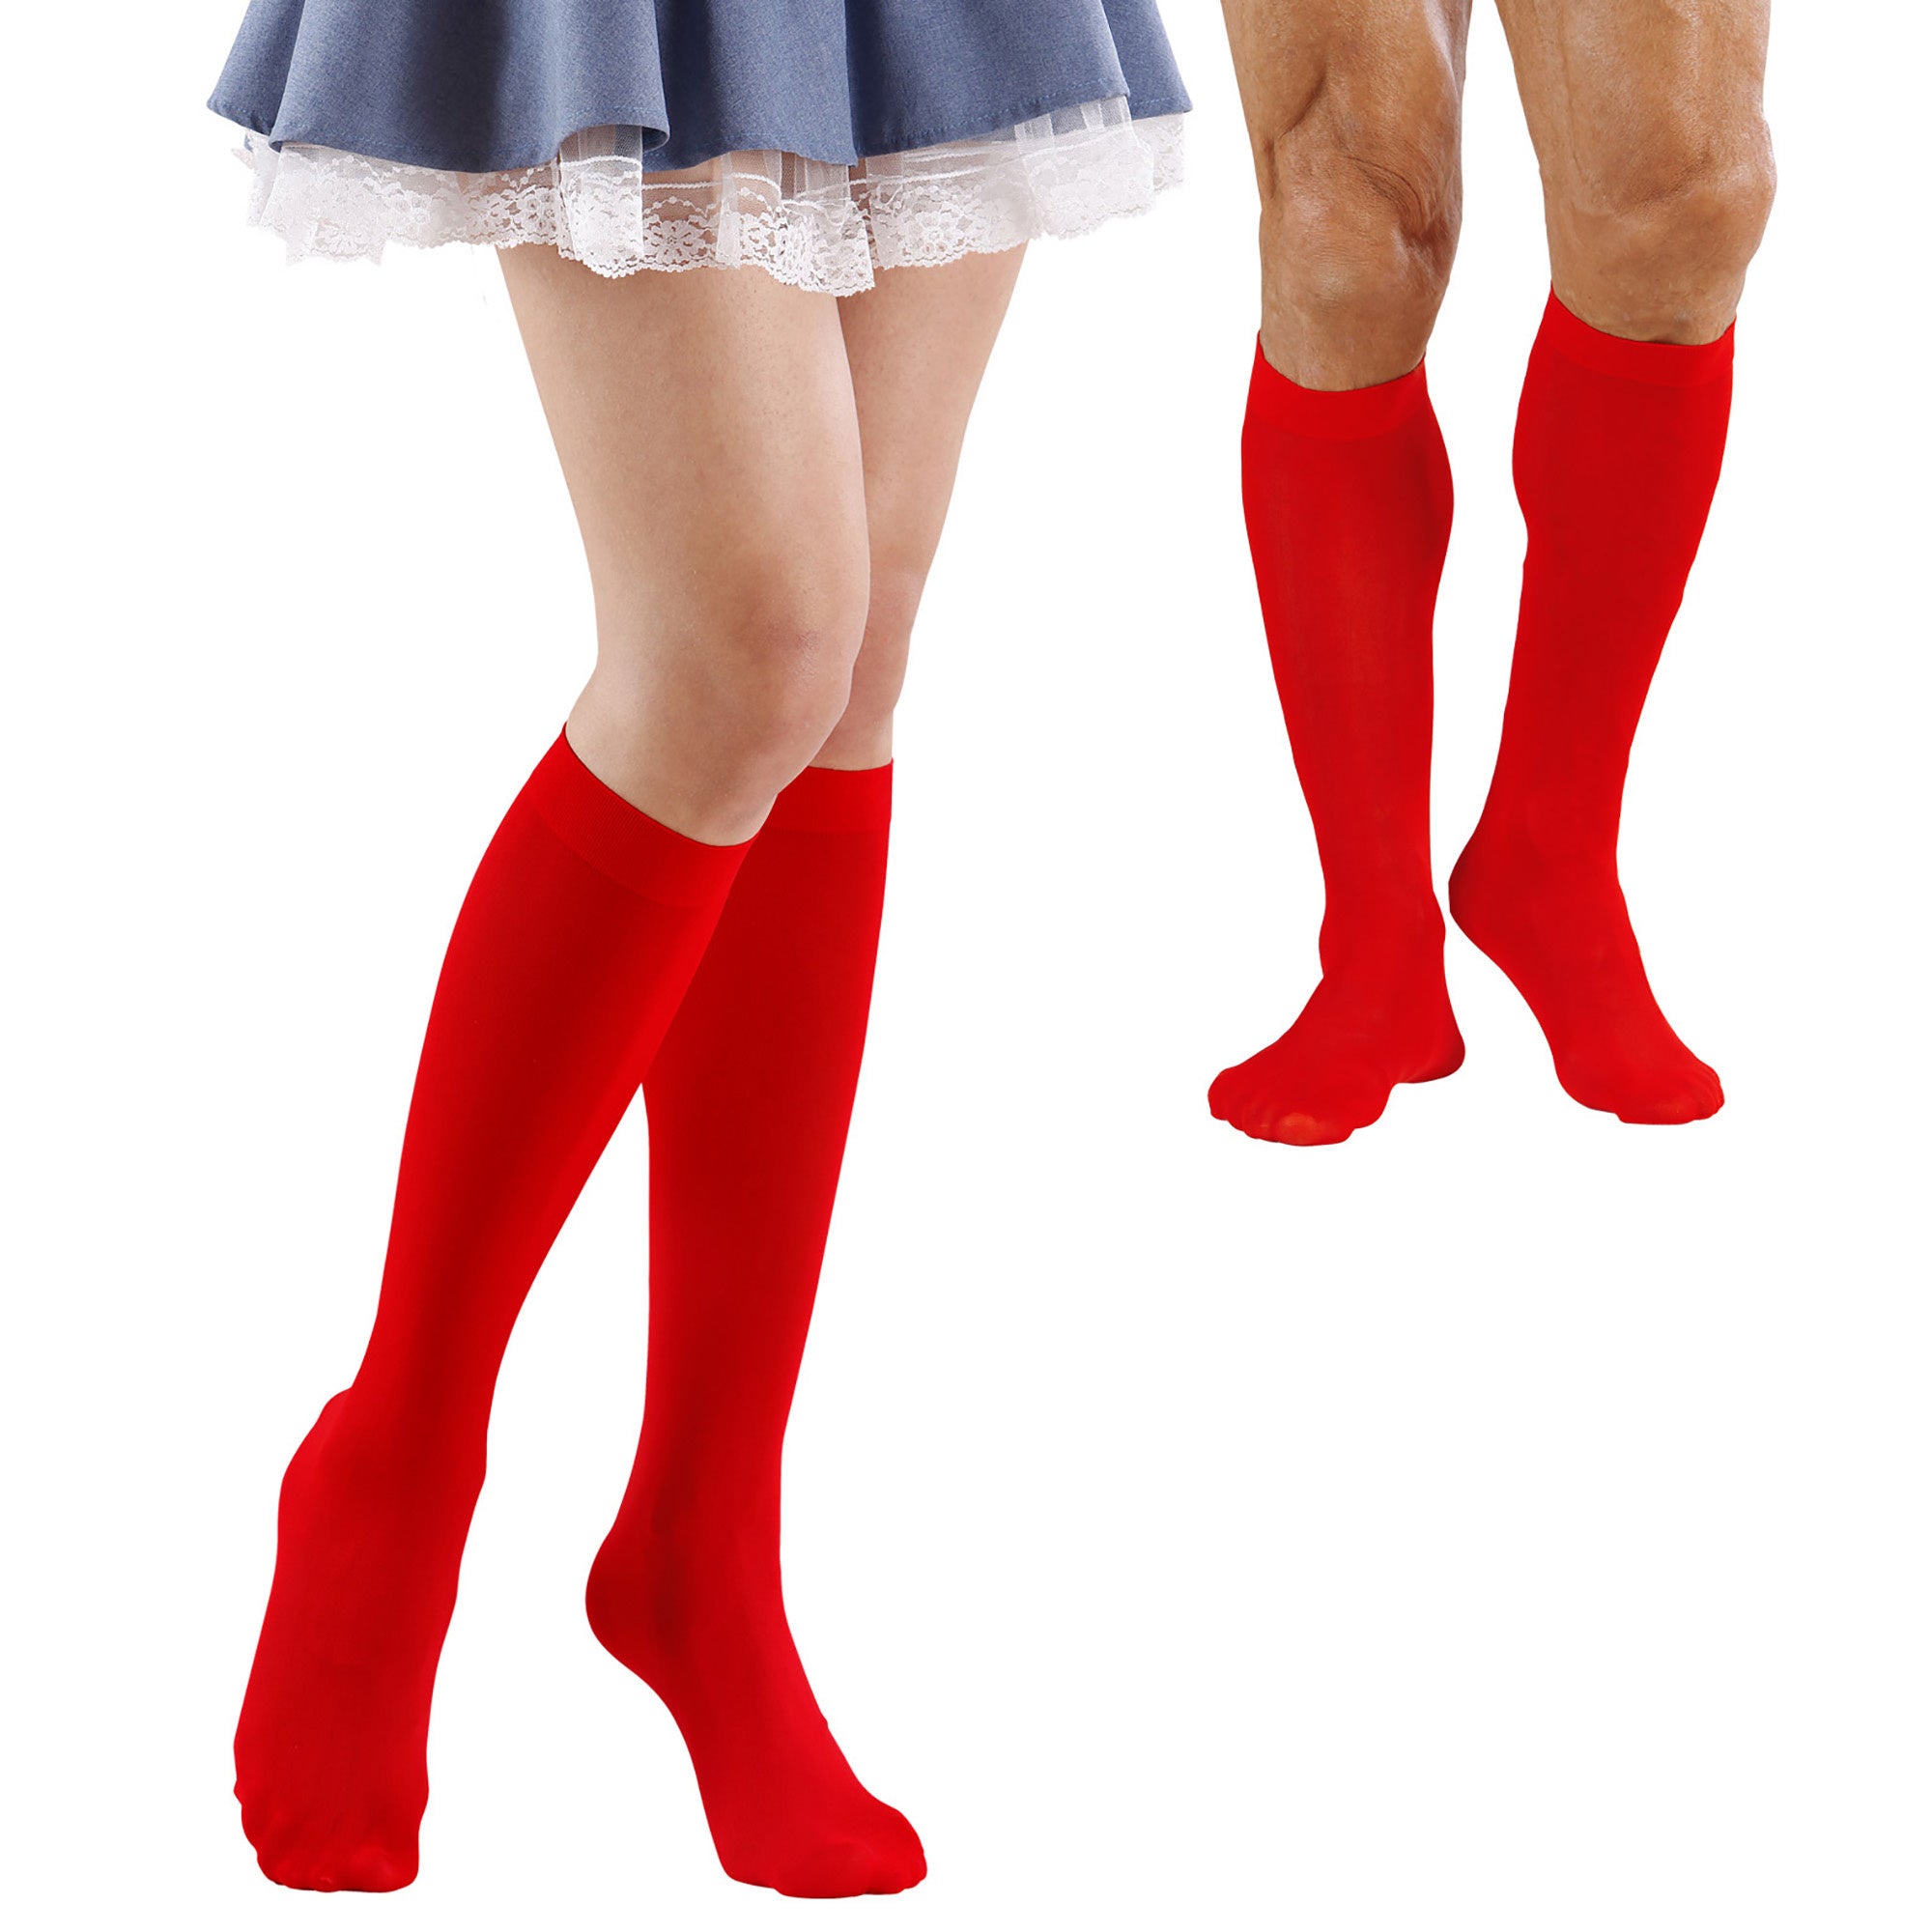 ESPA - Rode sokken voor volwassenen - Accessoires > Panty's en kousen